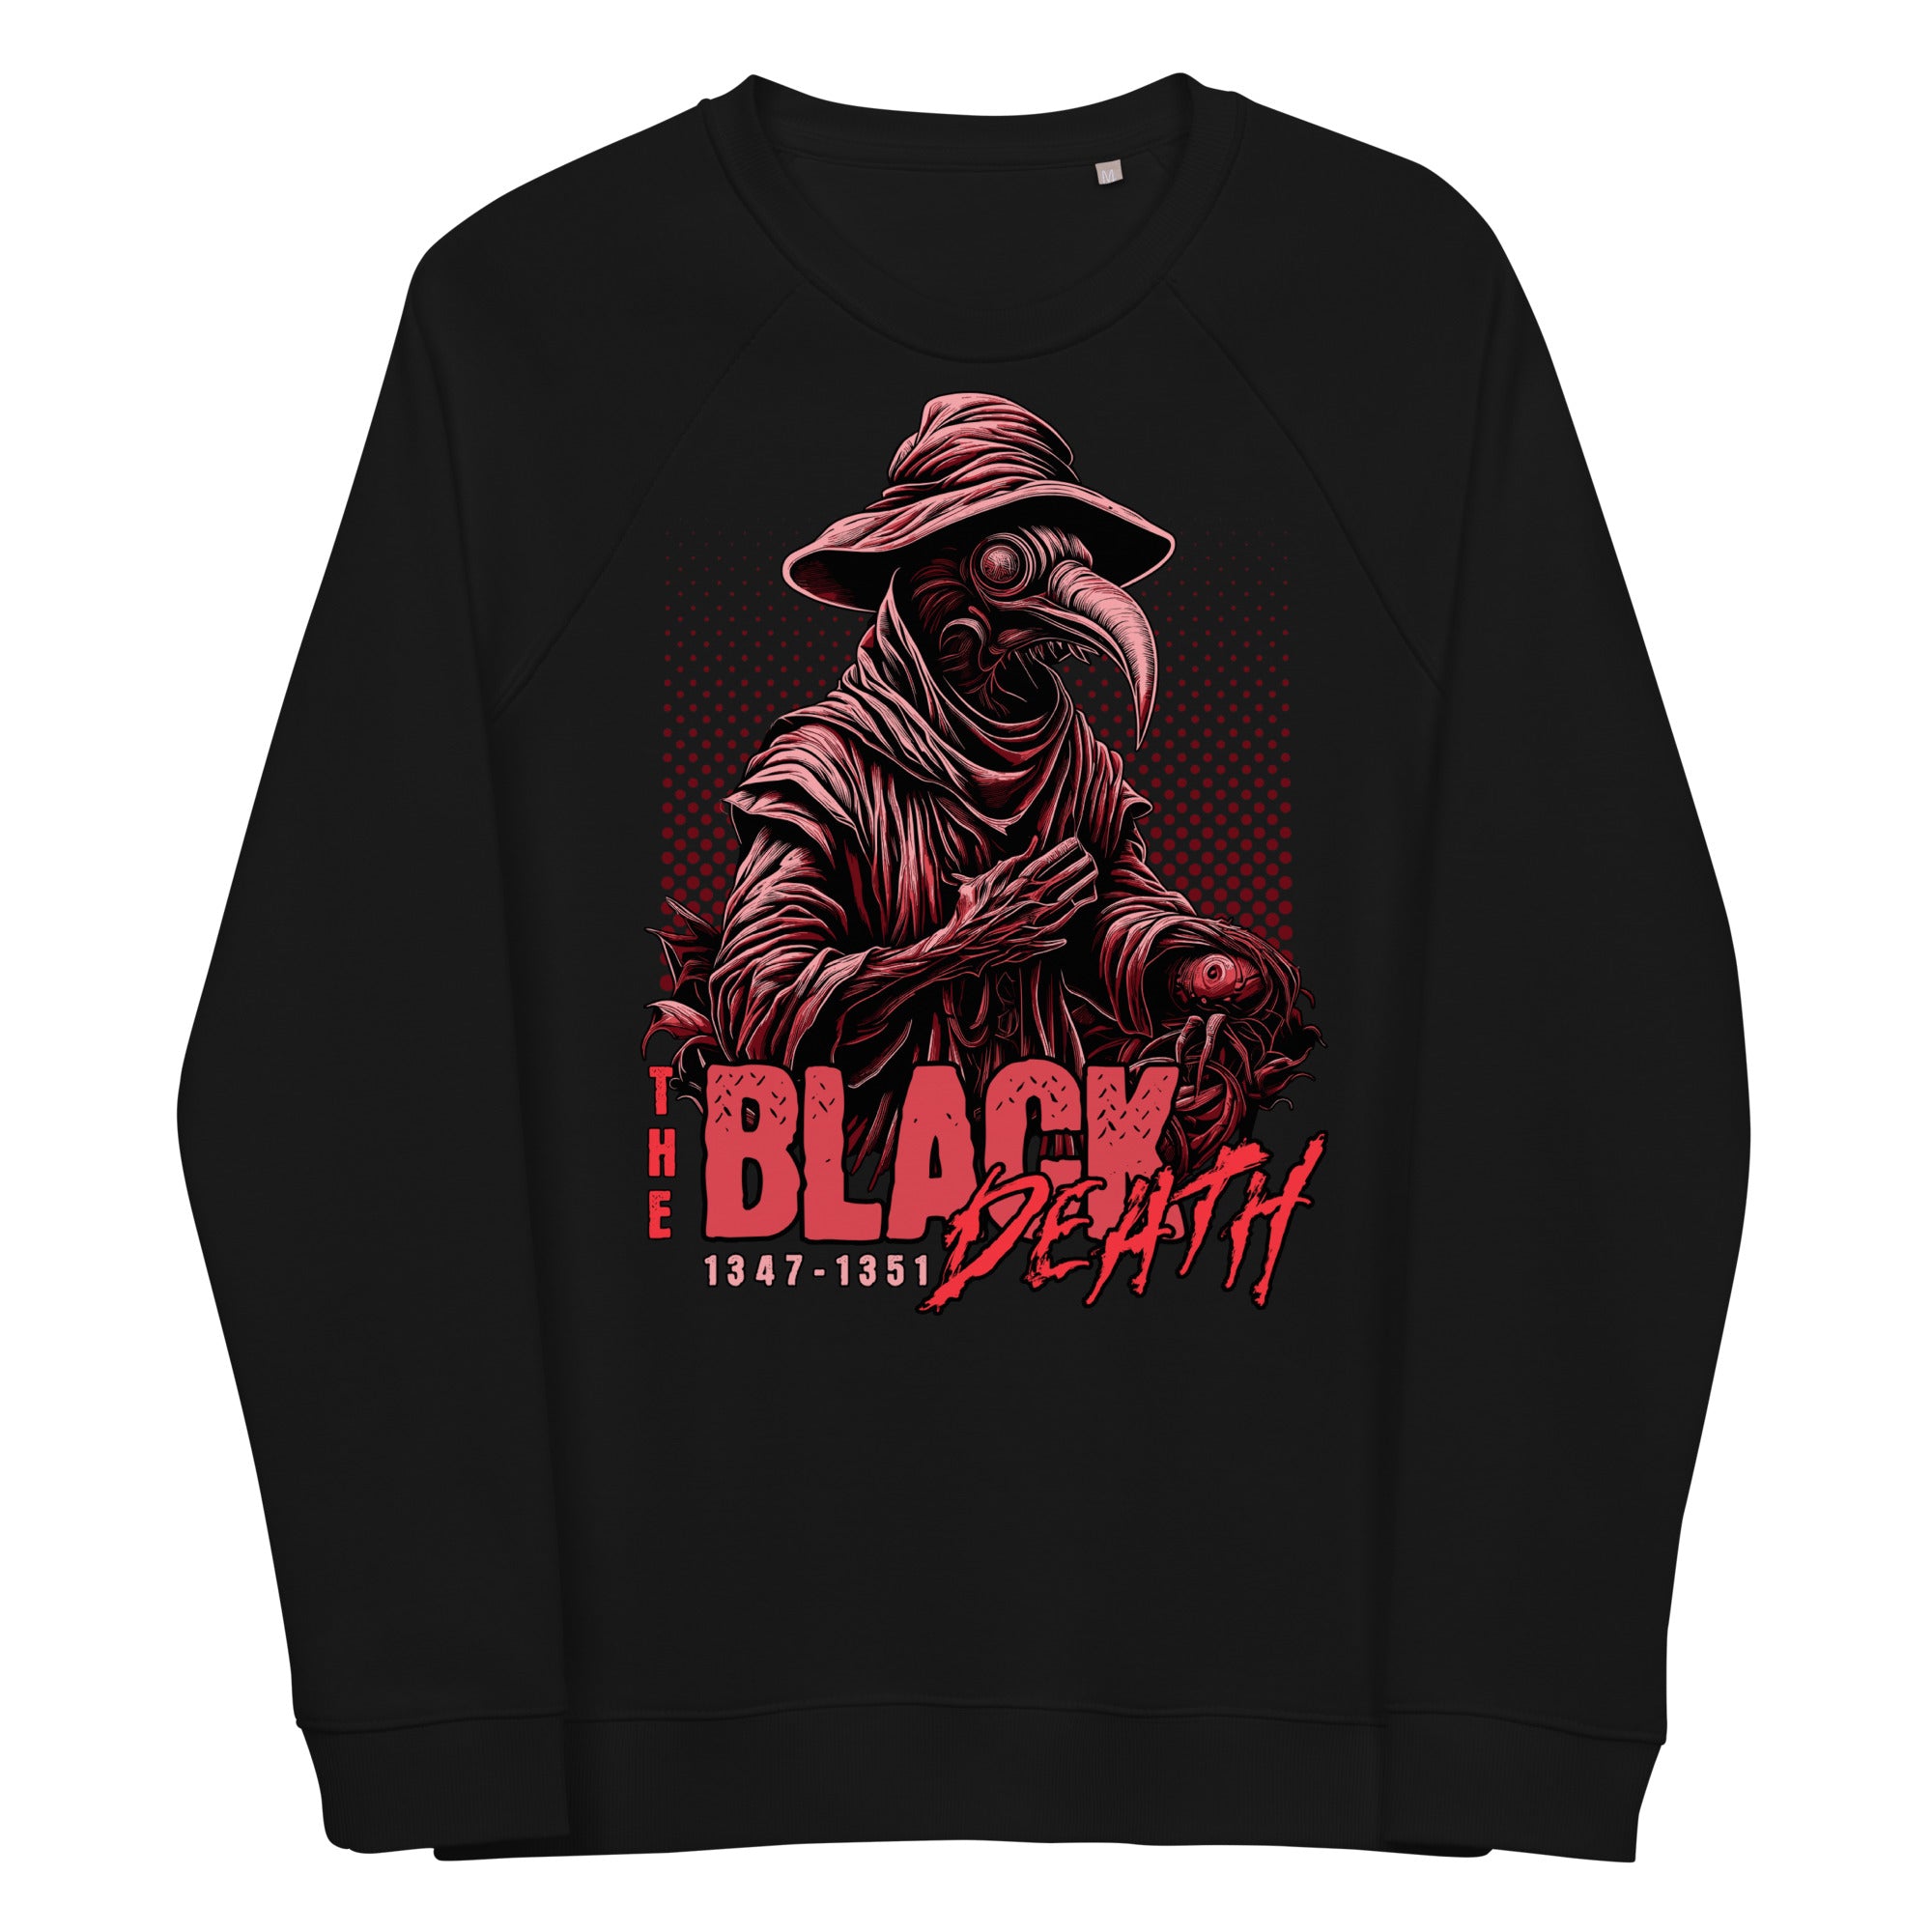 Black Death Men's sweatshirt